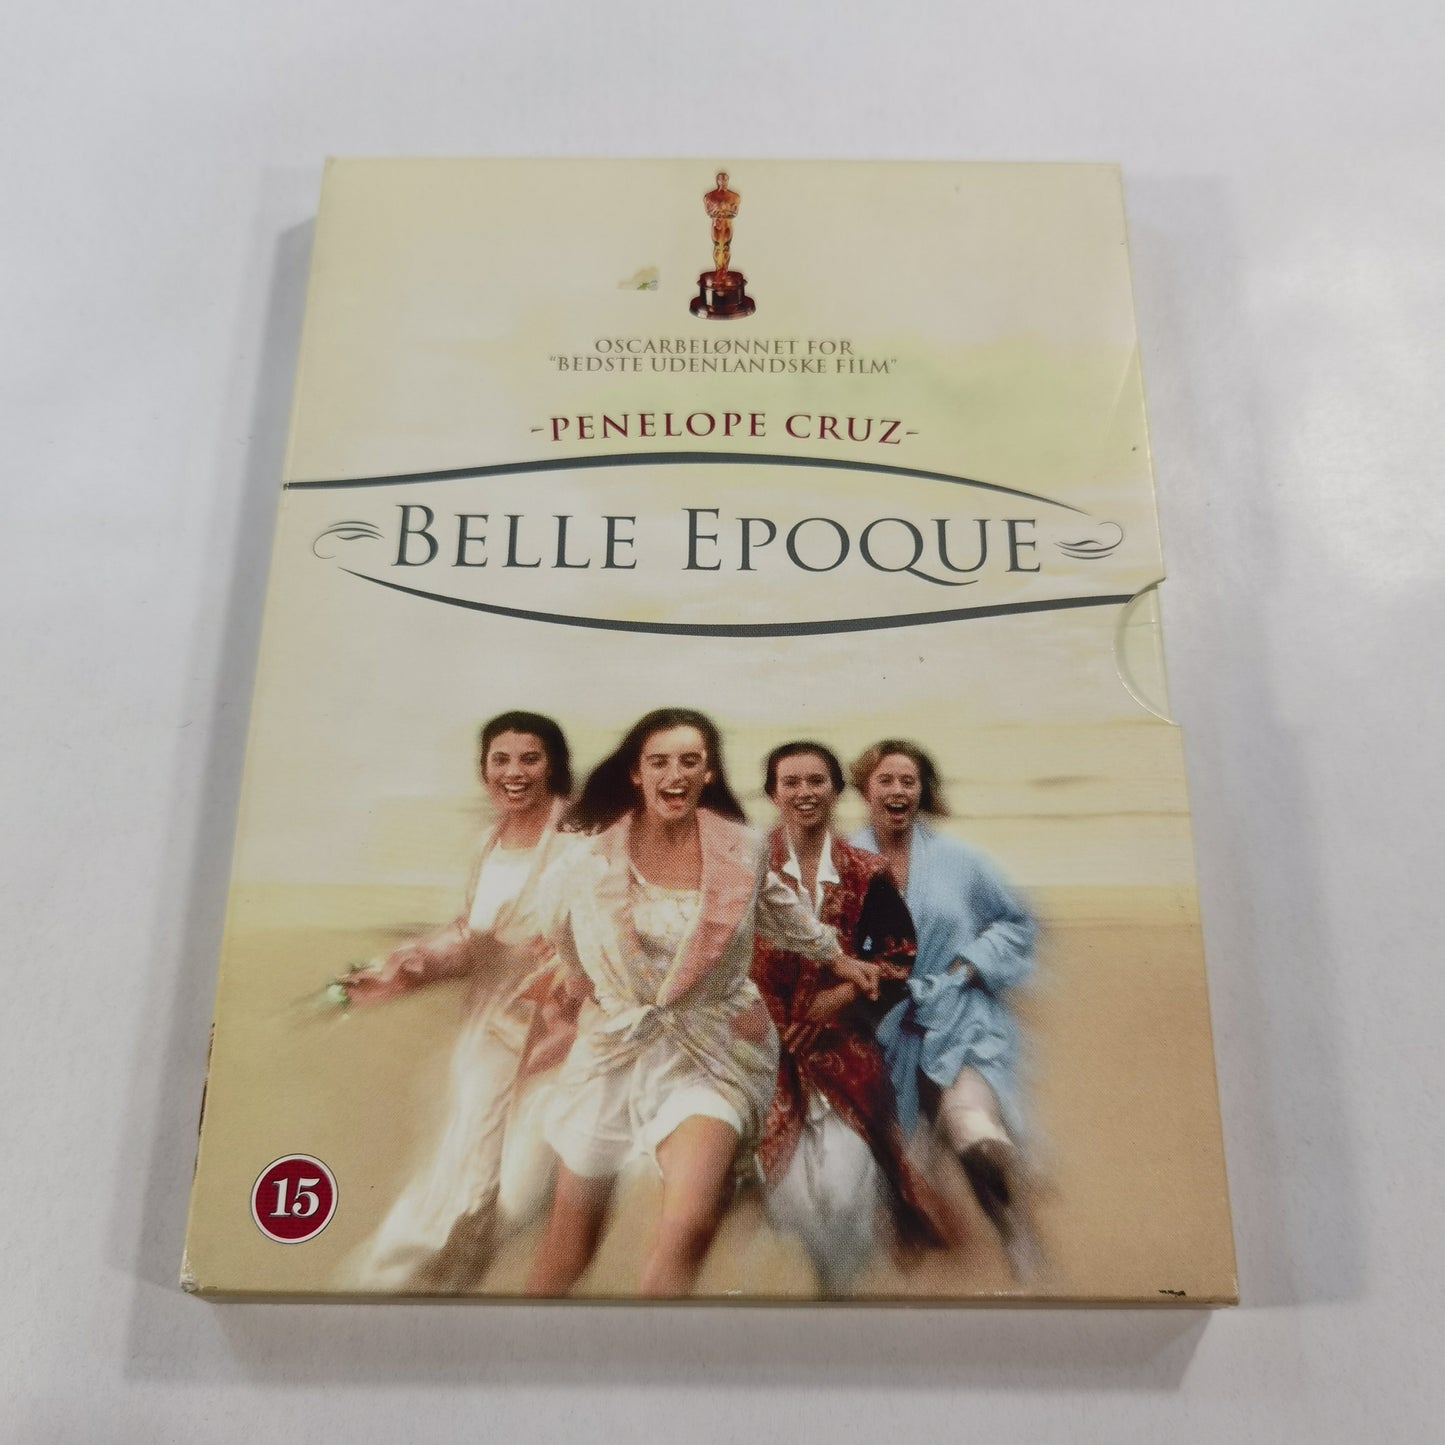 Belle Epoque (1992) - DVD DK